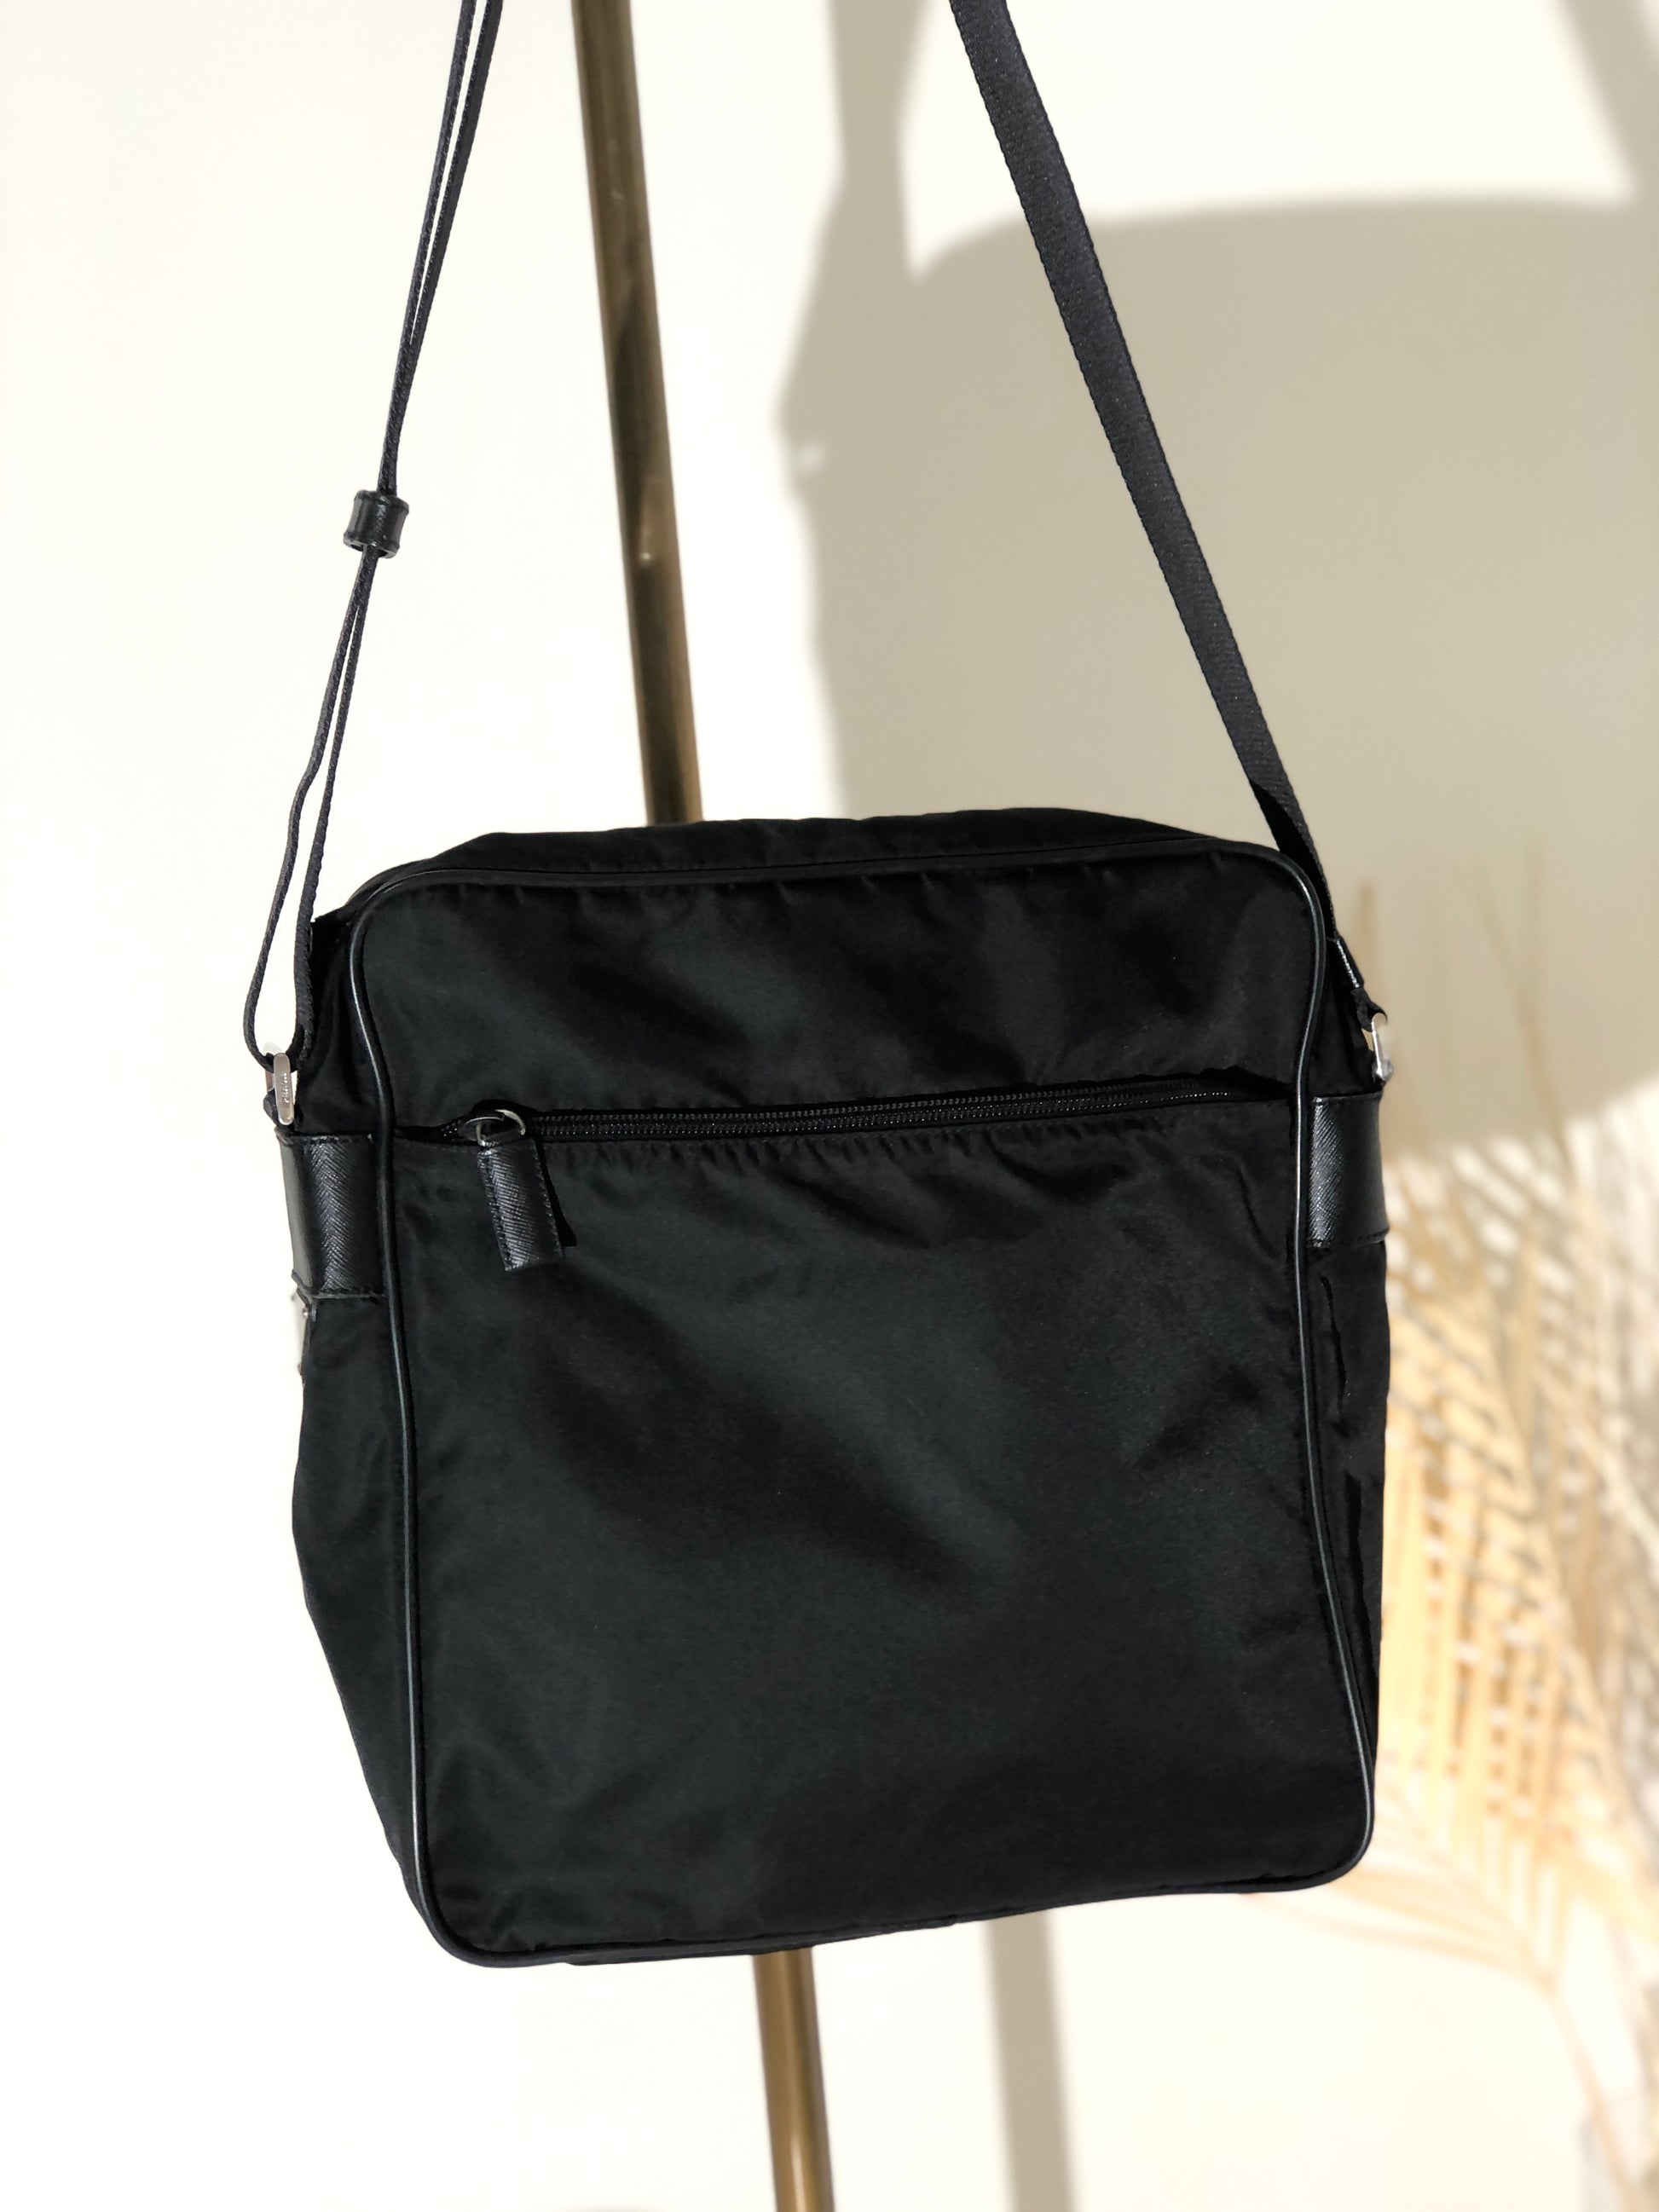 PRADA Triangle Nylon Shoulder Bag in Black